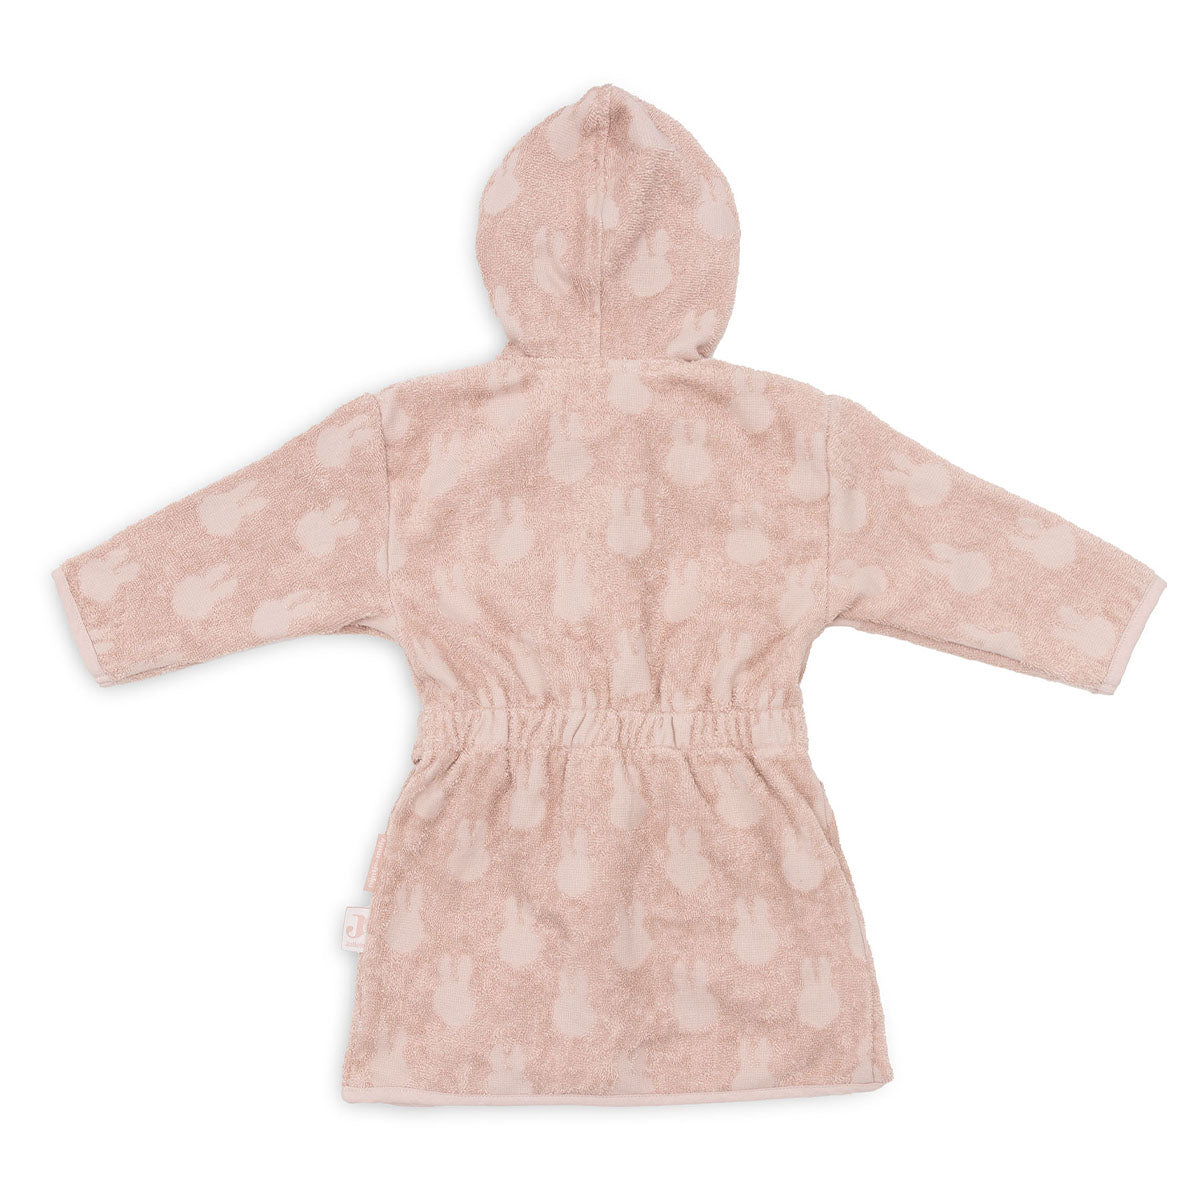 De heerlijk zachte Miffy jacquard badjas van Jollein in wild rose is ideaal na het badderen of zwemmen. Houd je kindje warm en comfortabel met deze handige badjas. Met koordsluiting en drukknoopje. 1-4 jaar. VanZus